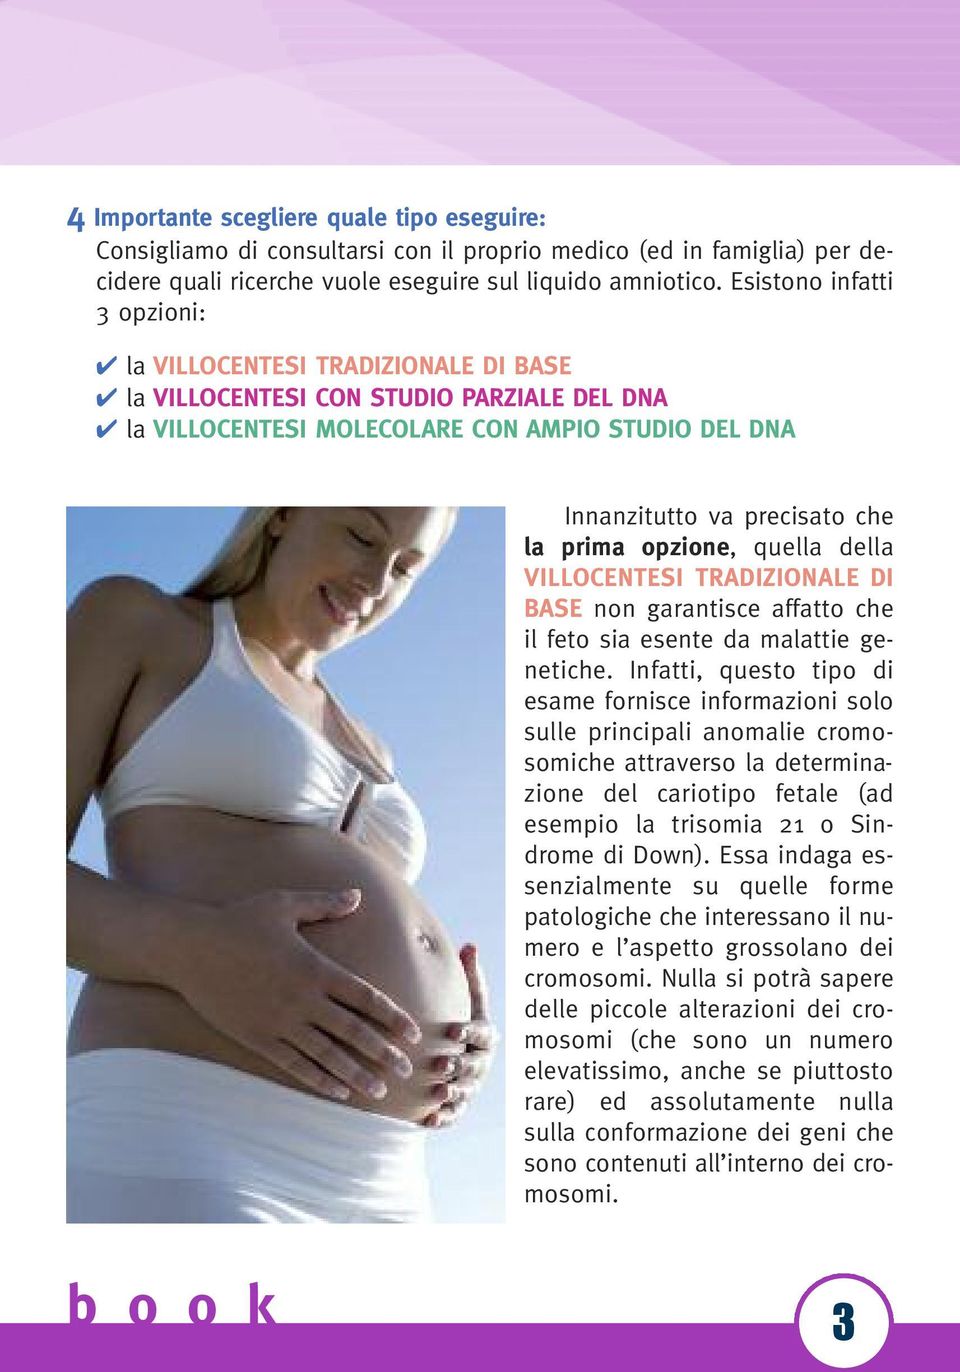 opzione, quella della VILLOCENTESI TRADIZIONALE DI BASE non garantisce affatto che il feto sia esente da malattie genetiche.